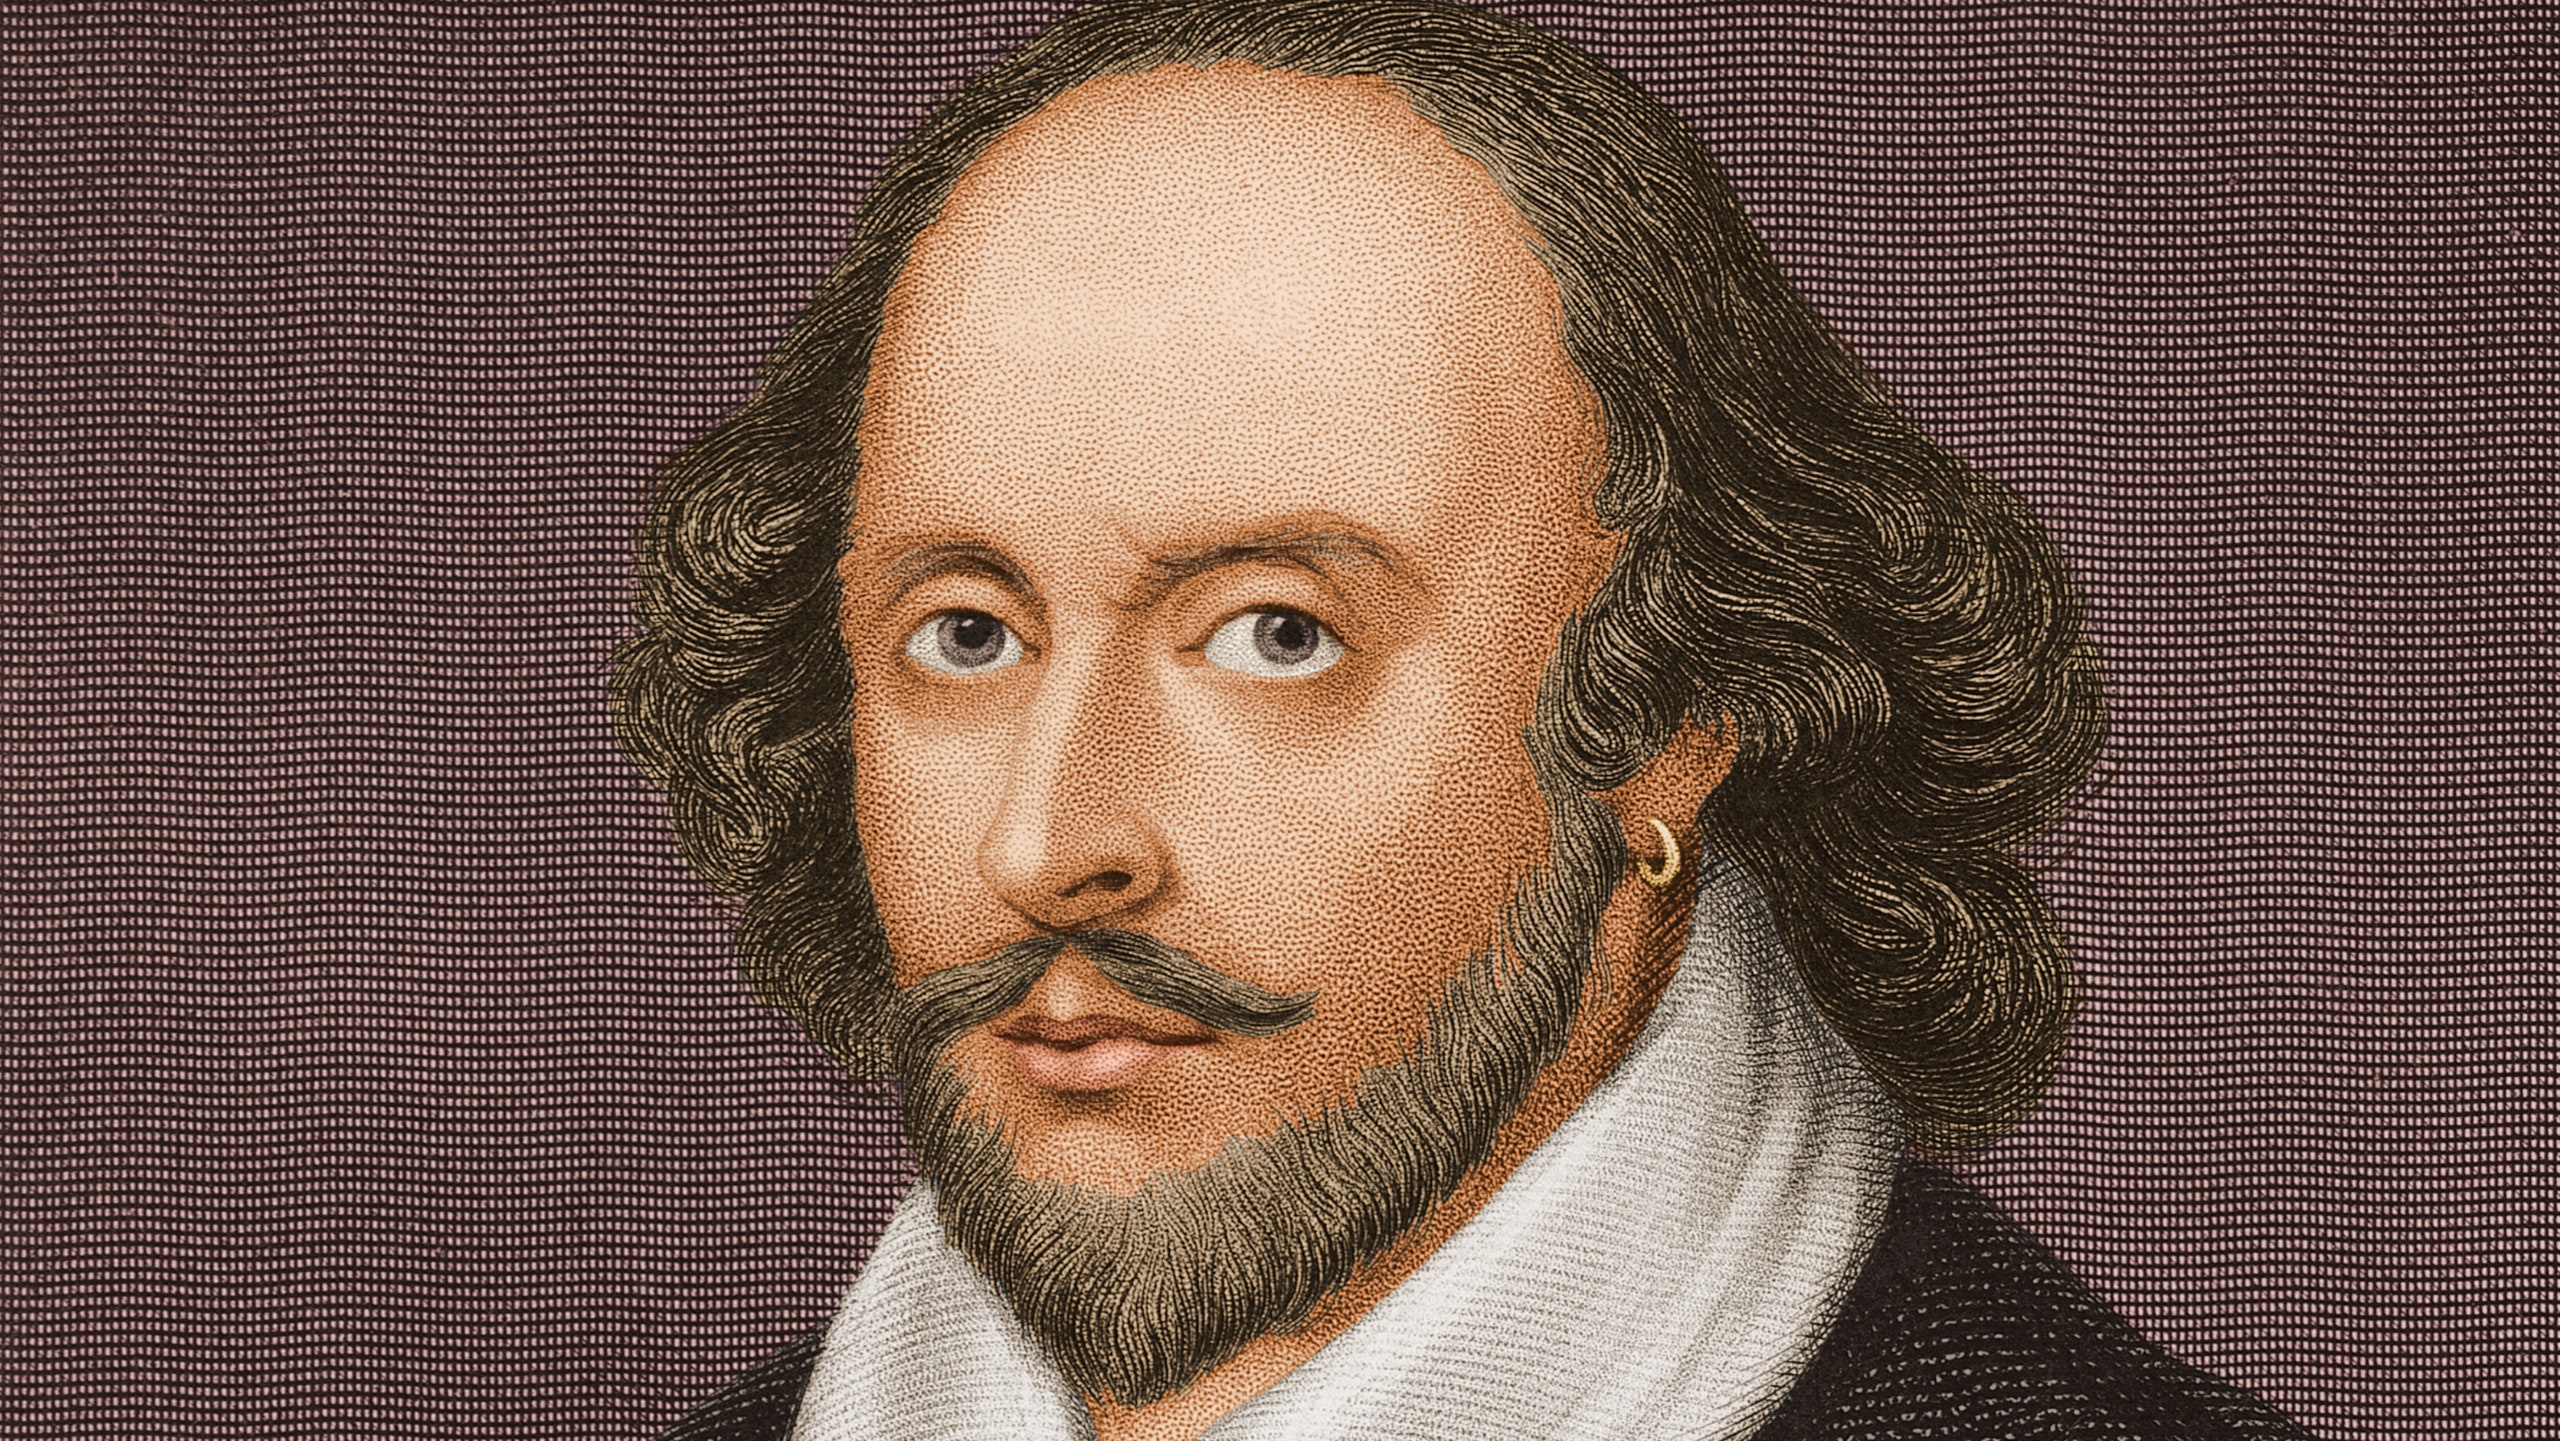 Шекспира обвинили в расизме. Поэт слишком сильно восхвалял белизну кожи